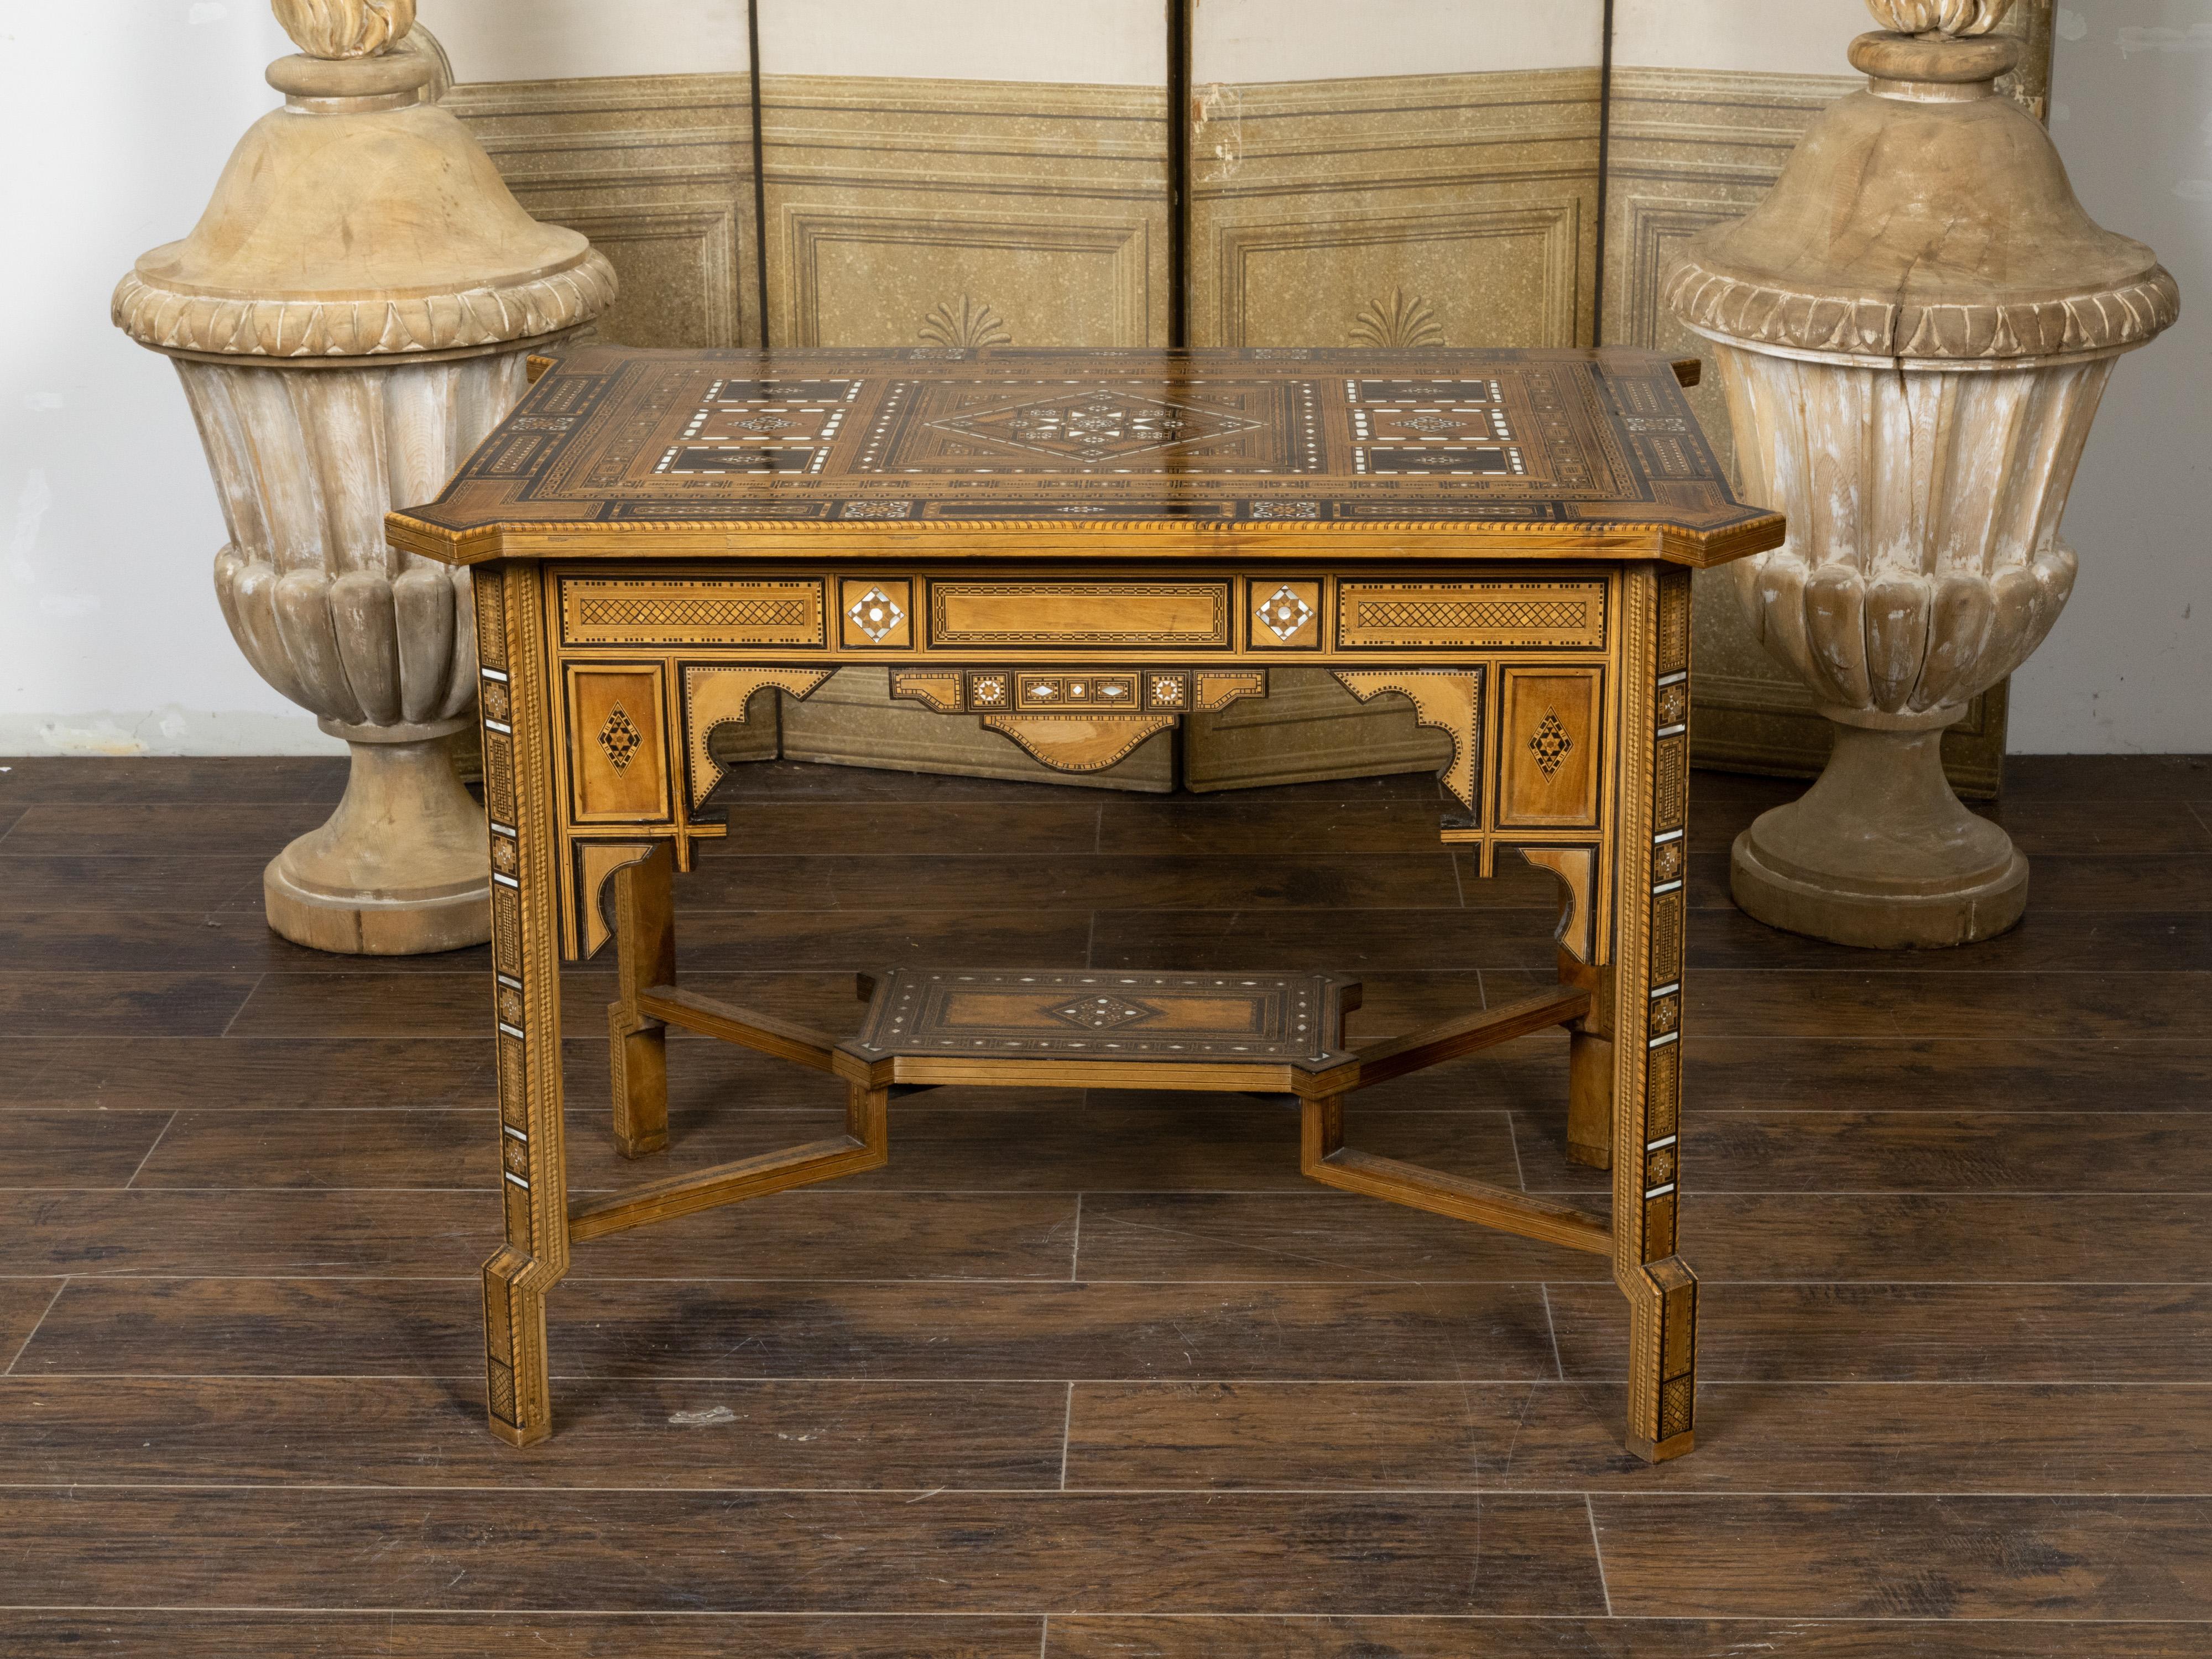 Ein marokkanischer Tisch im maurischen Stil aus dem frühen 20. Jahrhundert mit Intarsien aus Holz und geometrischen Motiven aus Perlmutt. Dieser im ersten Viertel des 20. Jahrhunderts in Marokko gefertigte Mitteltisch im maurischen Stil besticht